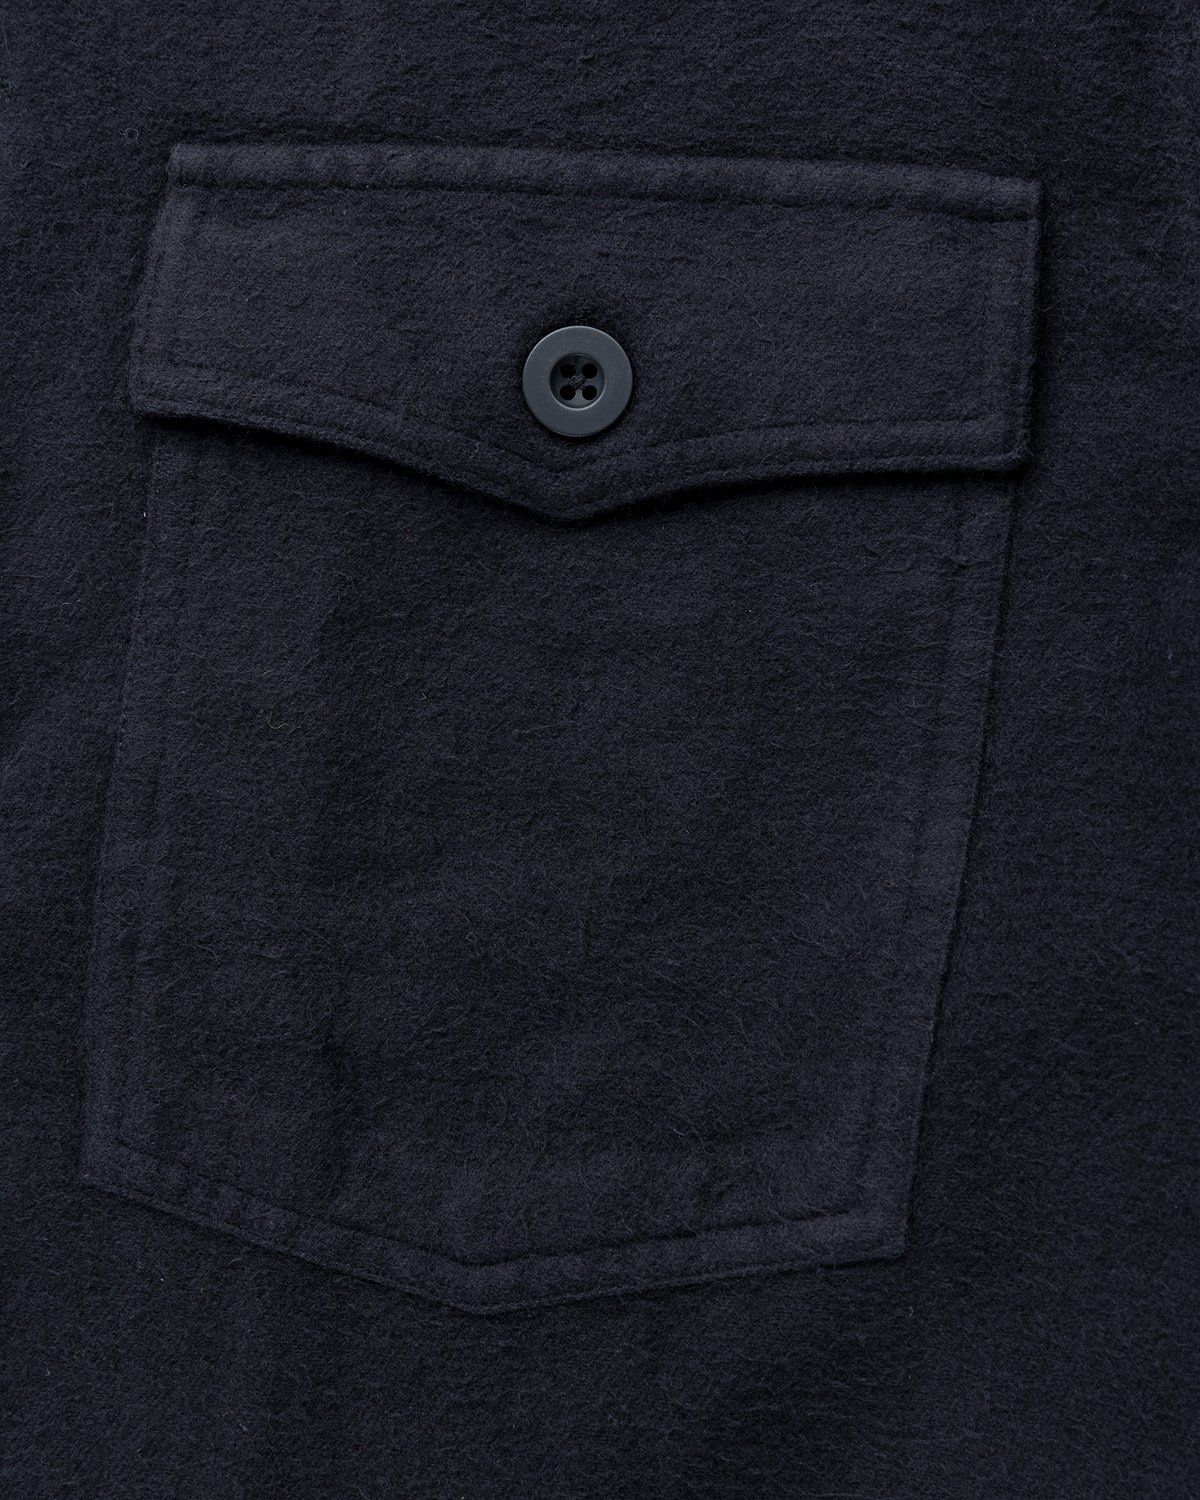 Our Legacy – Evening Coach Jacket Black Brushed - Overshirt - Black - Image 5